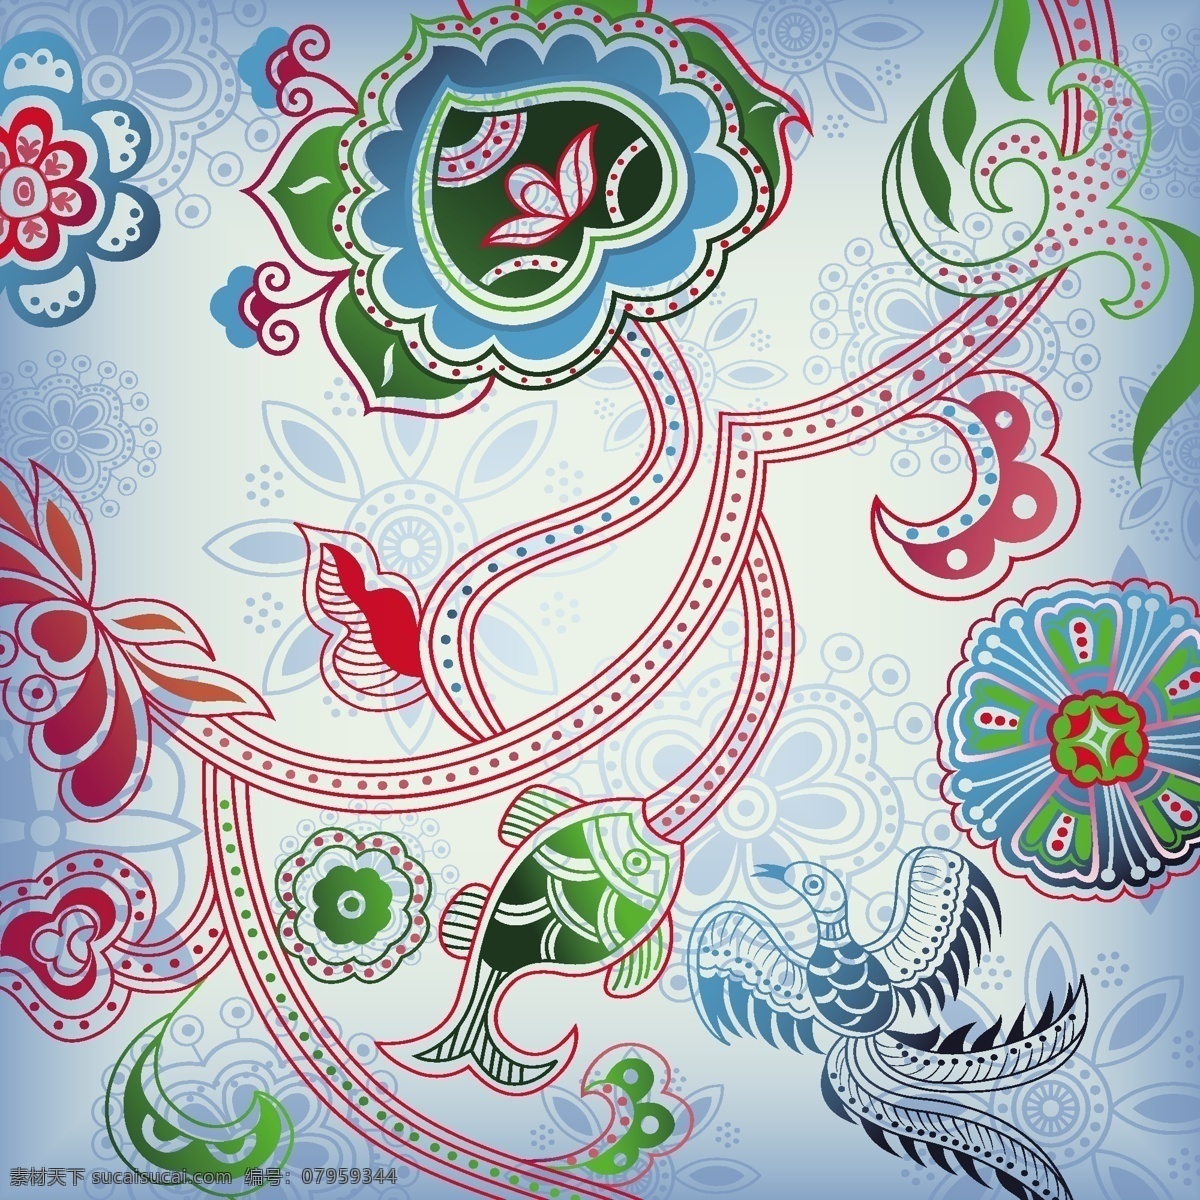 波西 米亚 风格 系列 三 民族风 时尚 波西米亚 夏季 流行要素 服饰 古典 典雅 背景 民族 风波 西 传统文化 文化艺术 矢量